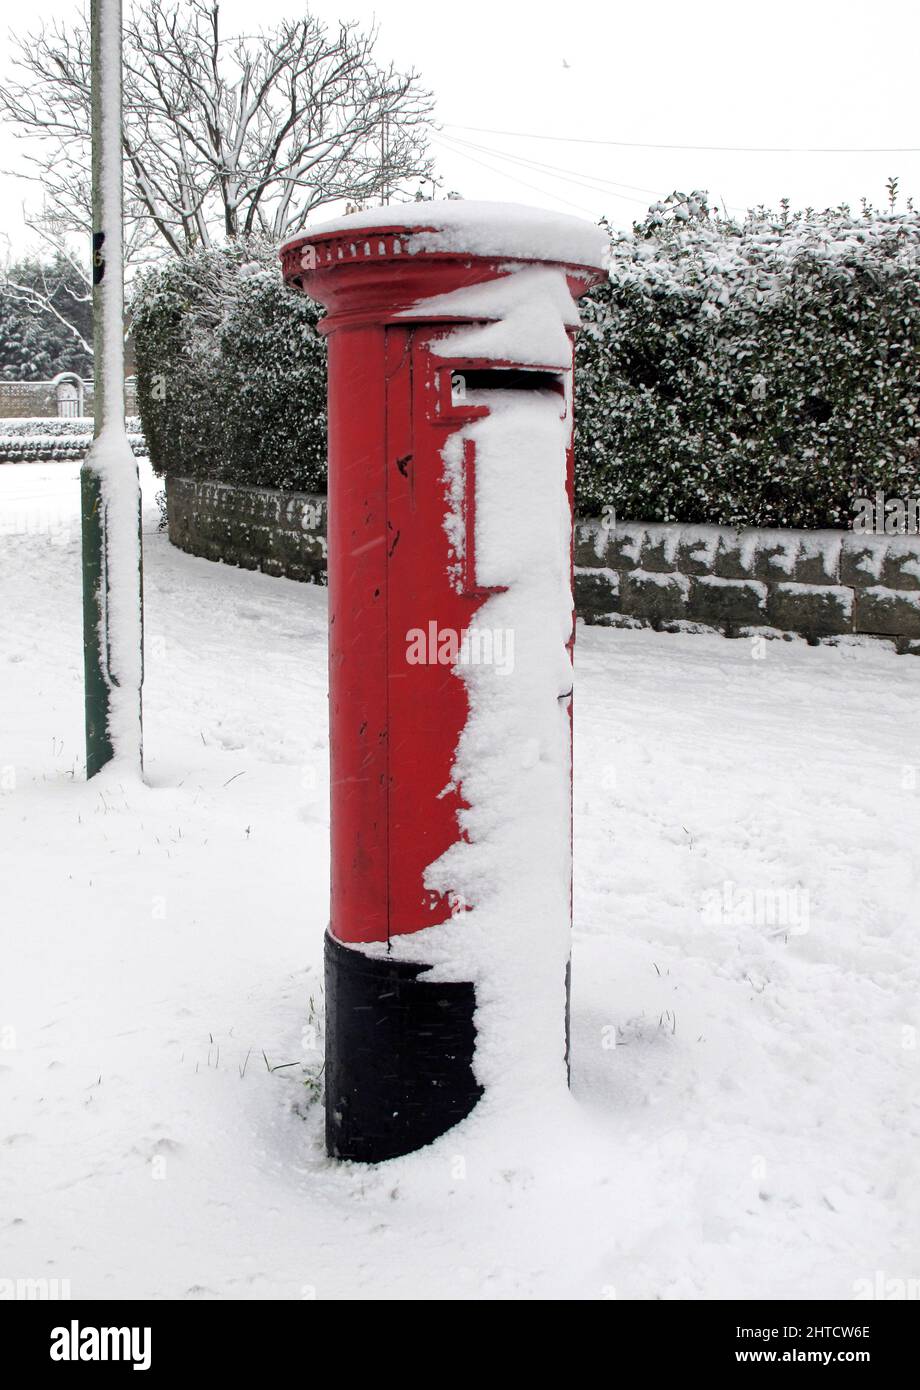 Snow, Northern Road, Swindon, 2010. Detalle de una caja de columnas cubierta de nieve en Northern Road. Foto de stock